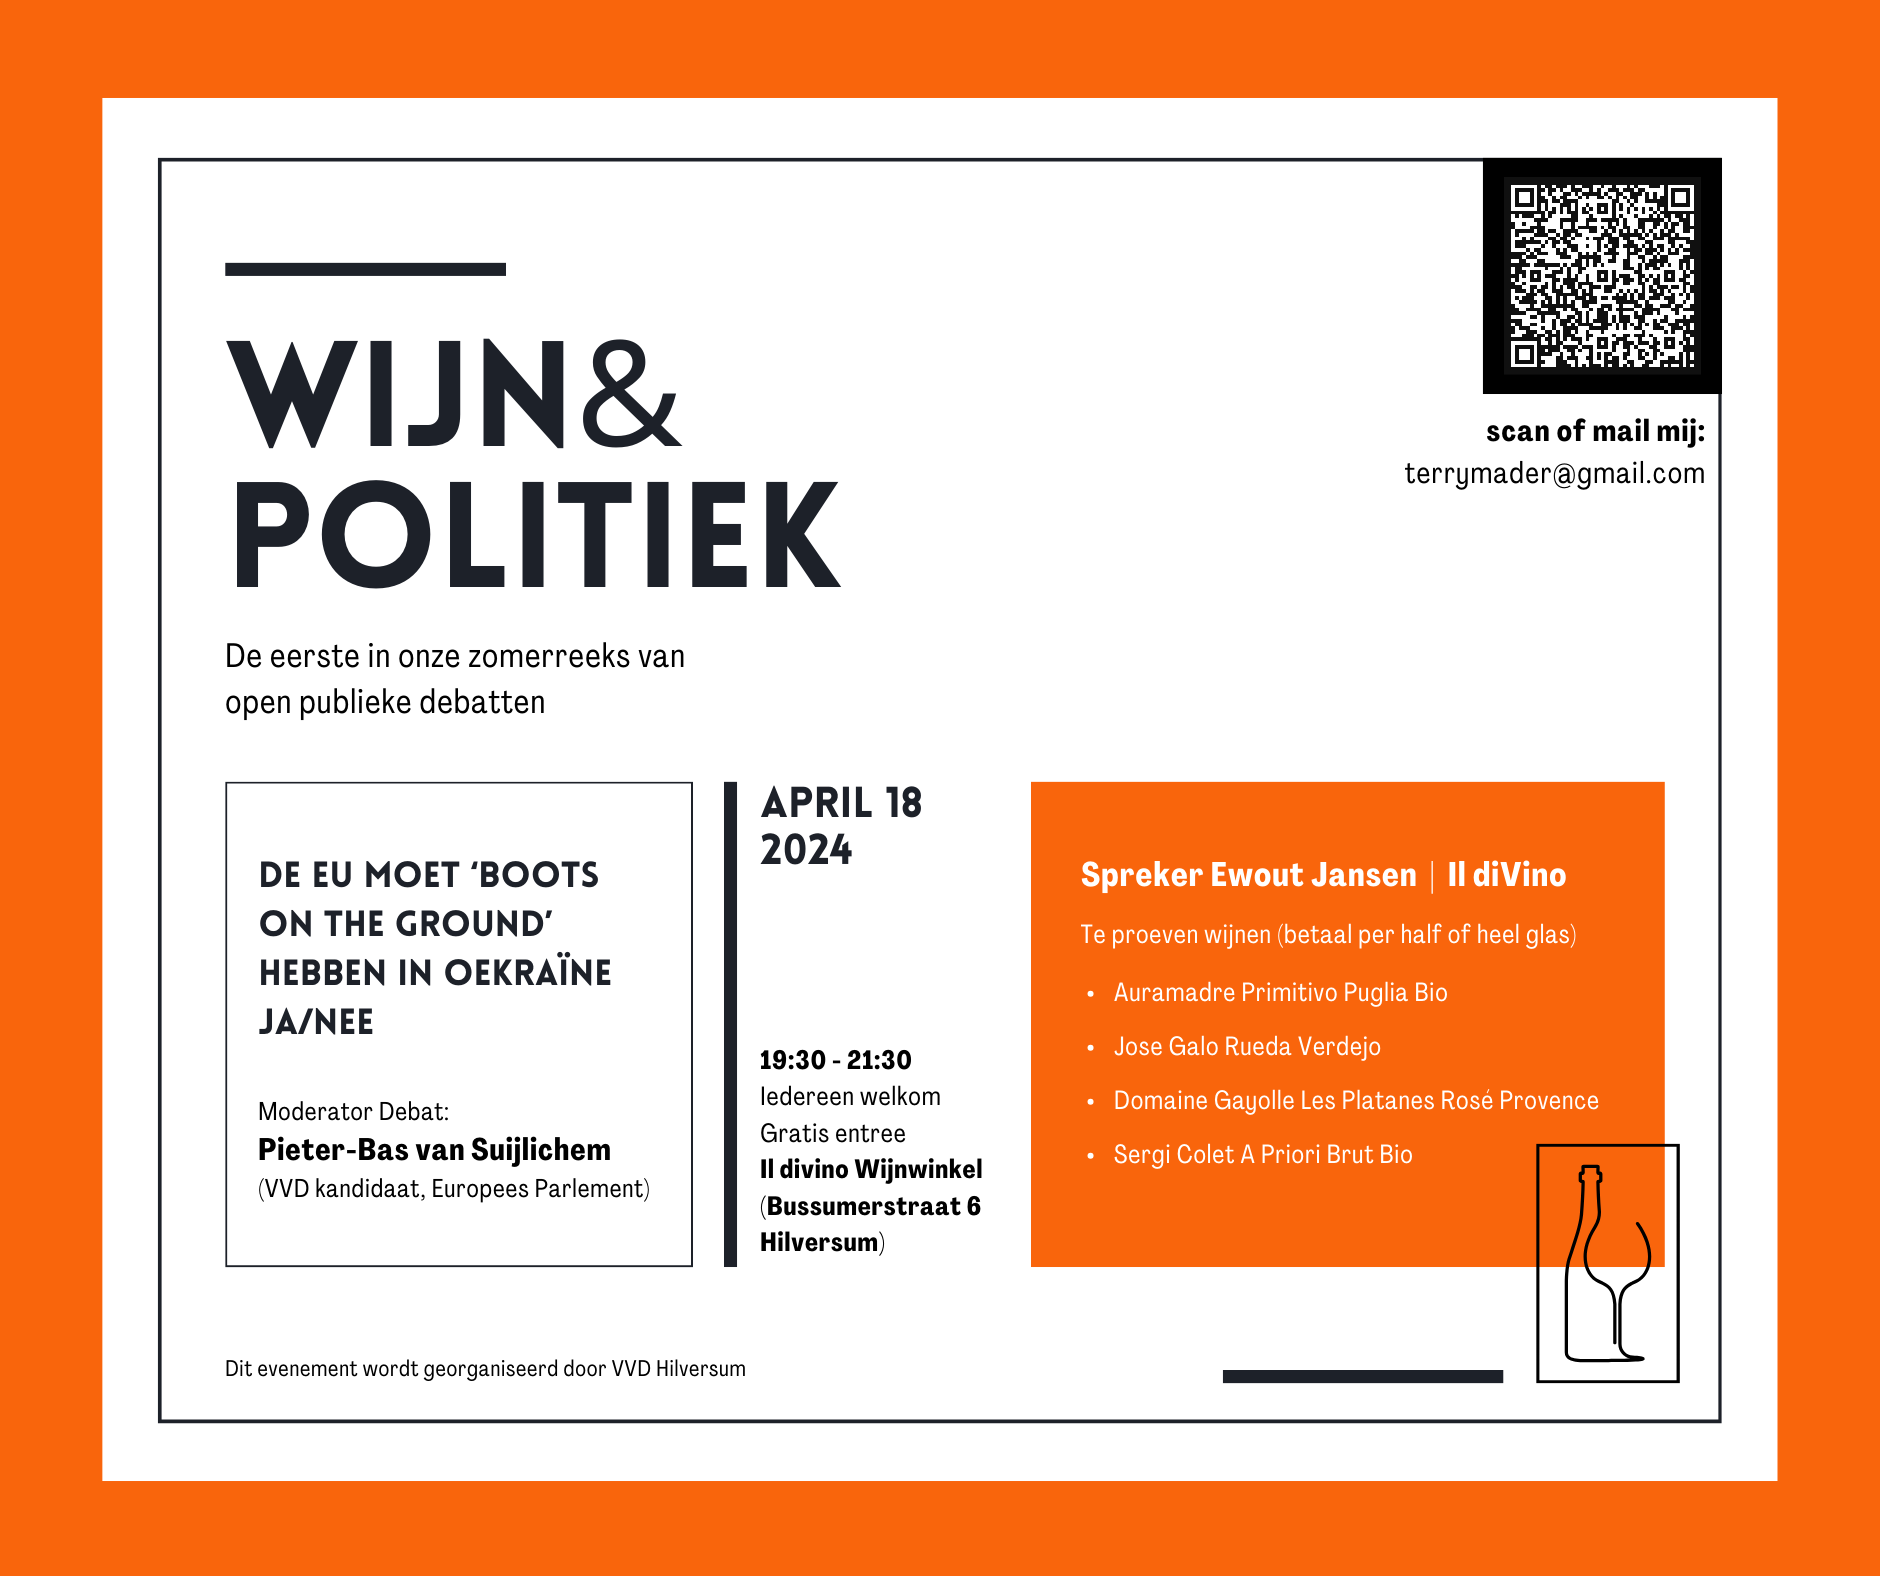 VVD-FB-POST-WIJN-POLITIEK-orange.png